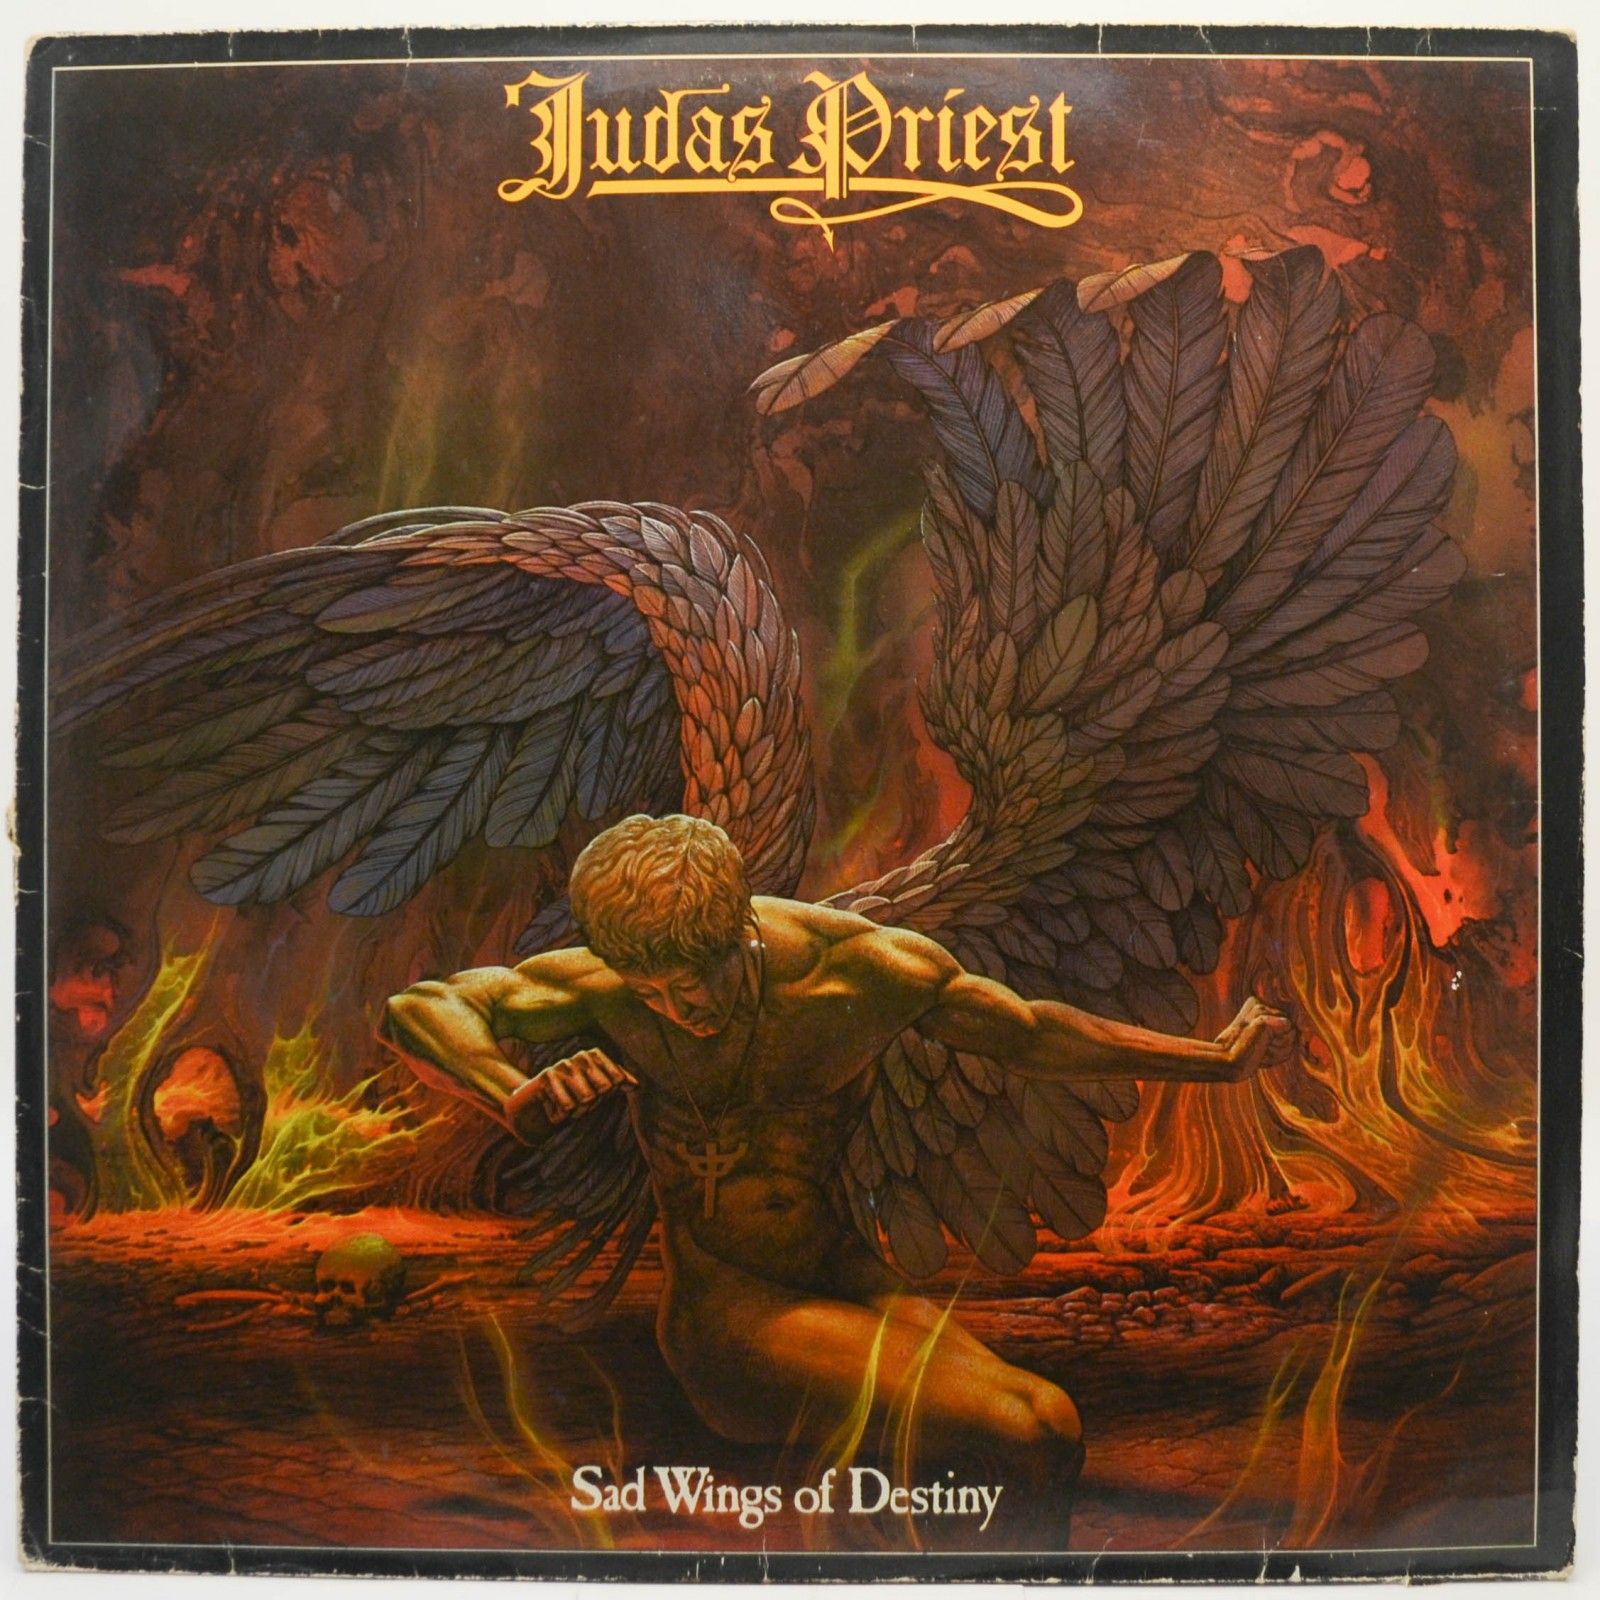 Judas Priest — Sad Wings Of Destiny, 1976